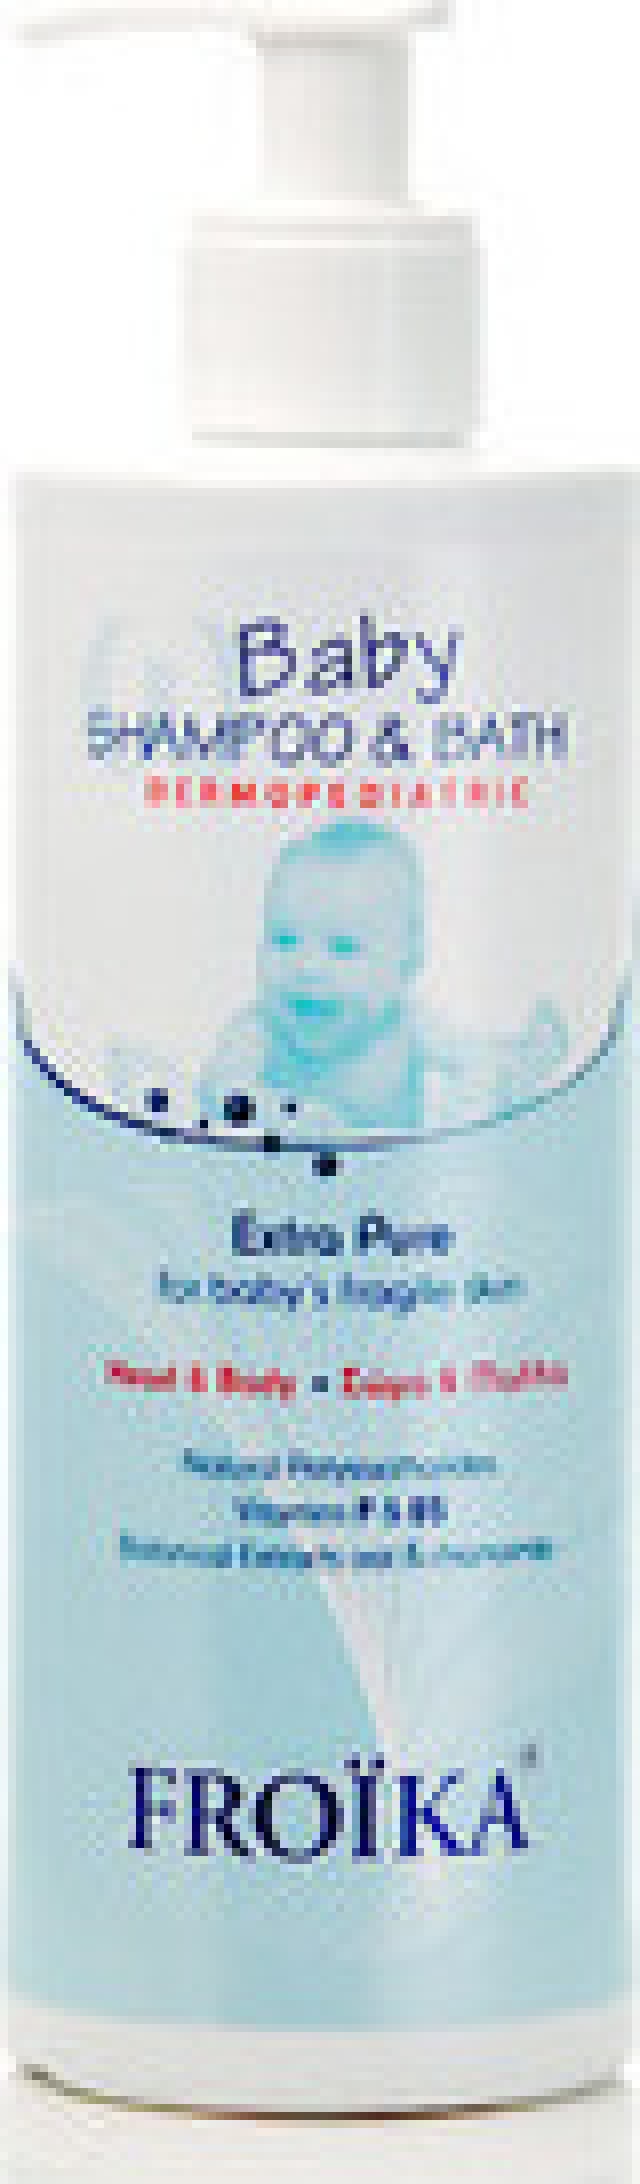 Froika Baby Shampoo - Bath Σαμπουάν - Αφρόλουτρο Για Το Ευαίσθητο Δέρμα Του Παιδιού 200ml